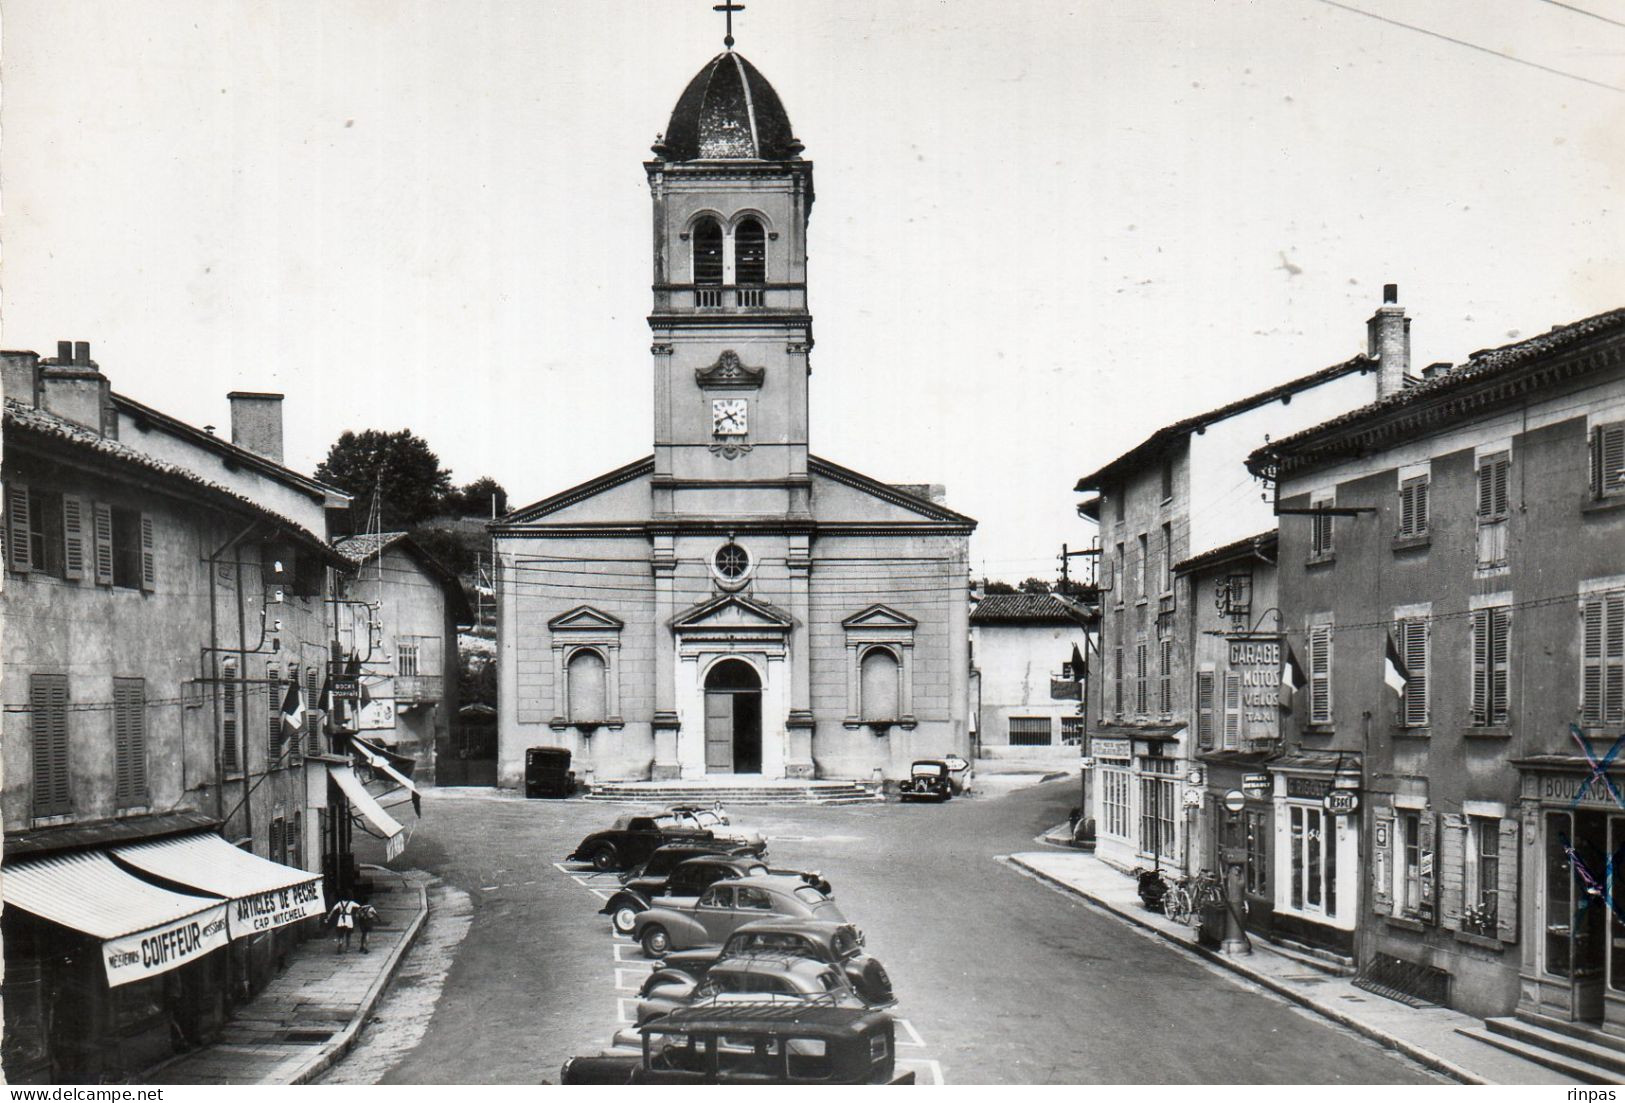 (01) MONTMERLE Place église Pompe à Essence Esso Garage Taxi Coiffeur  Article Peche Voiture Autos  Car 1966 (Ain) (BC) - Unclassified